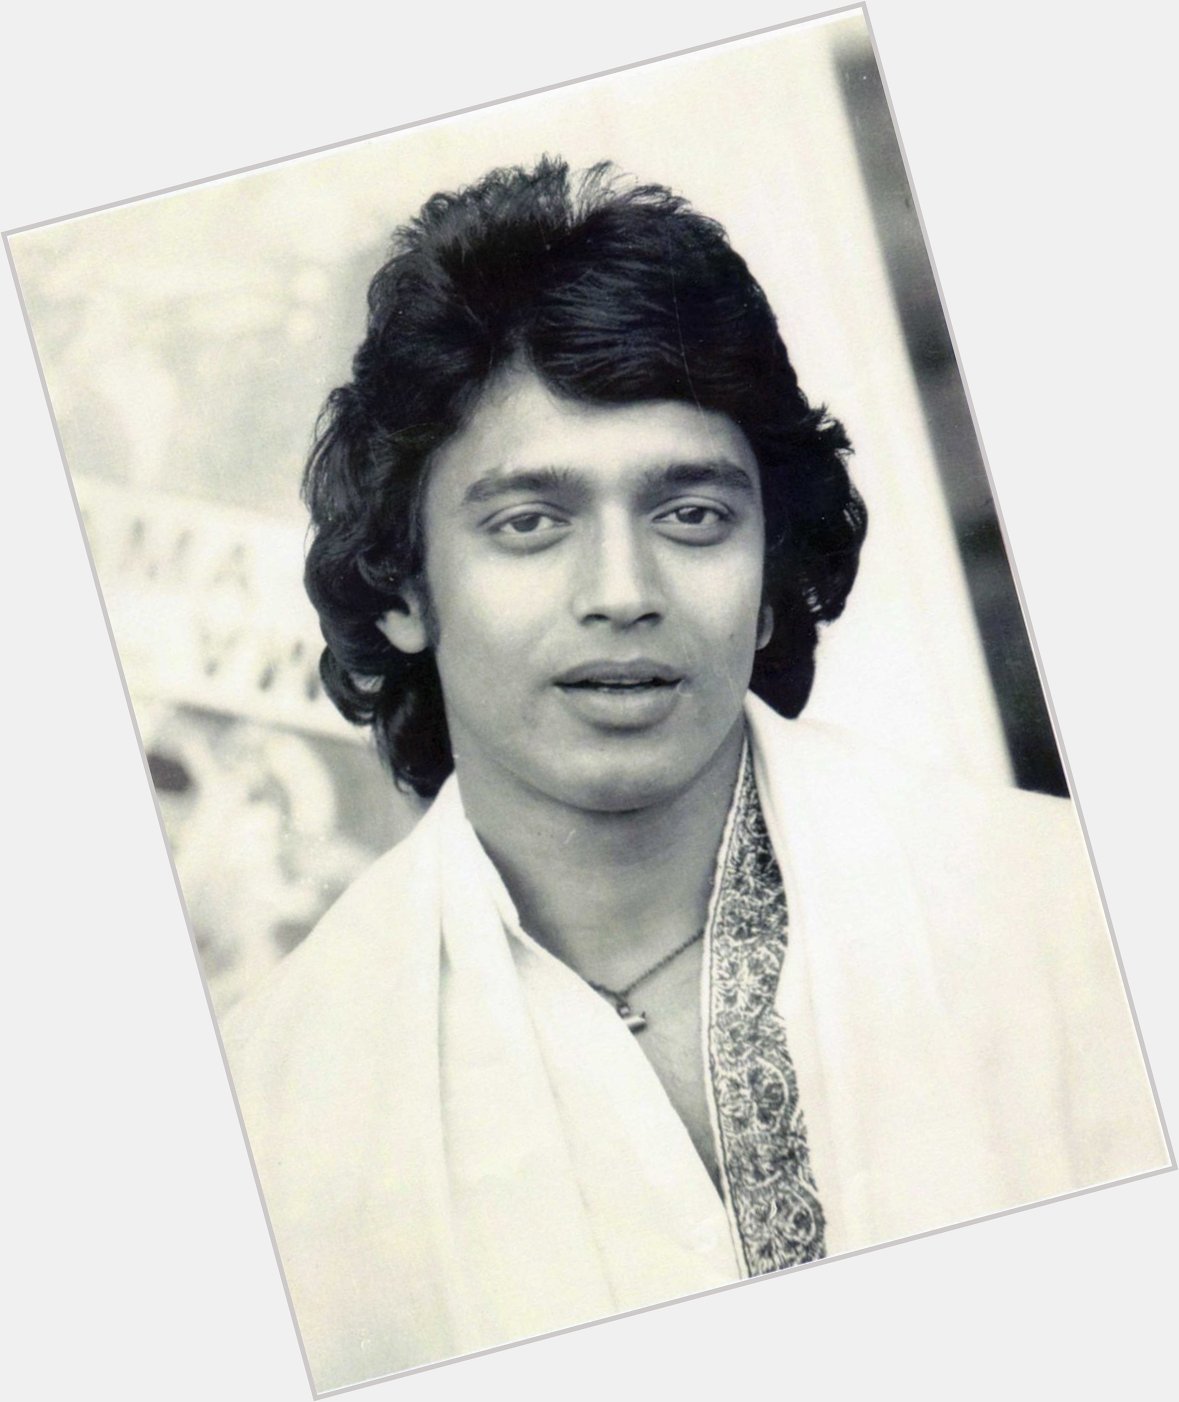 Happy Birthday to Mithun Chakraborty   About:  